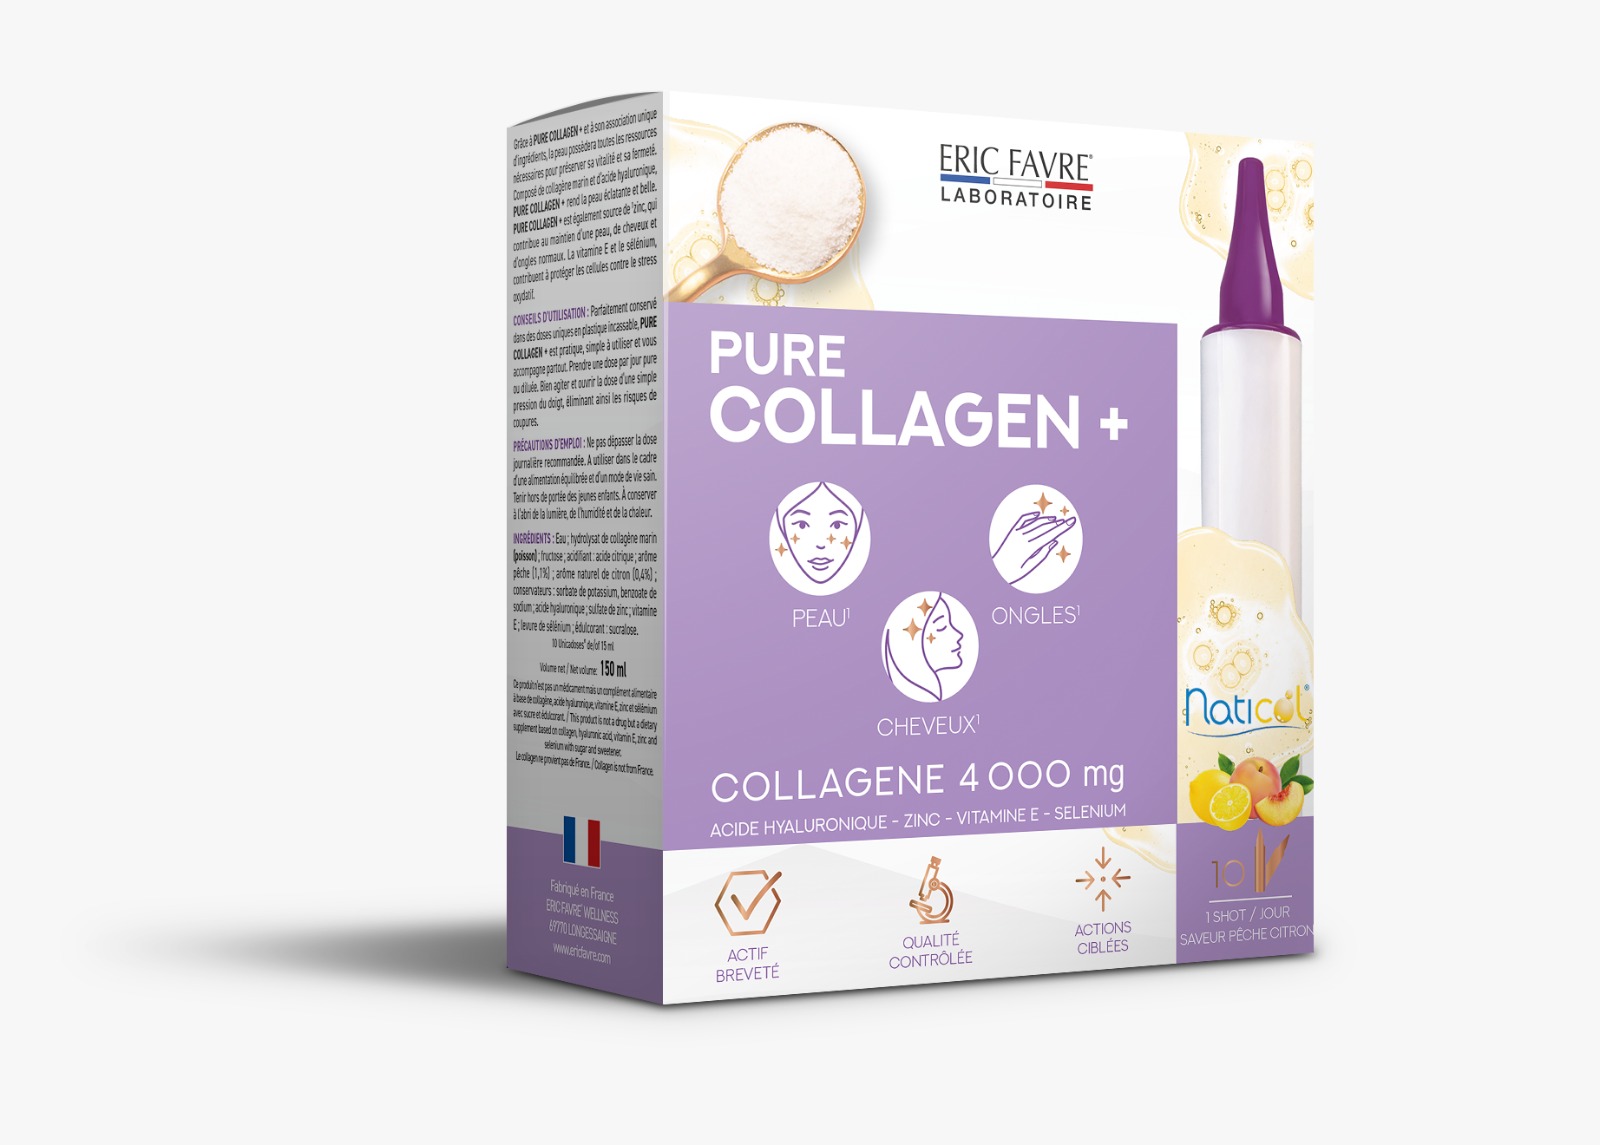 Pure collagen plus